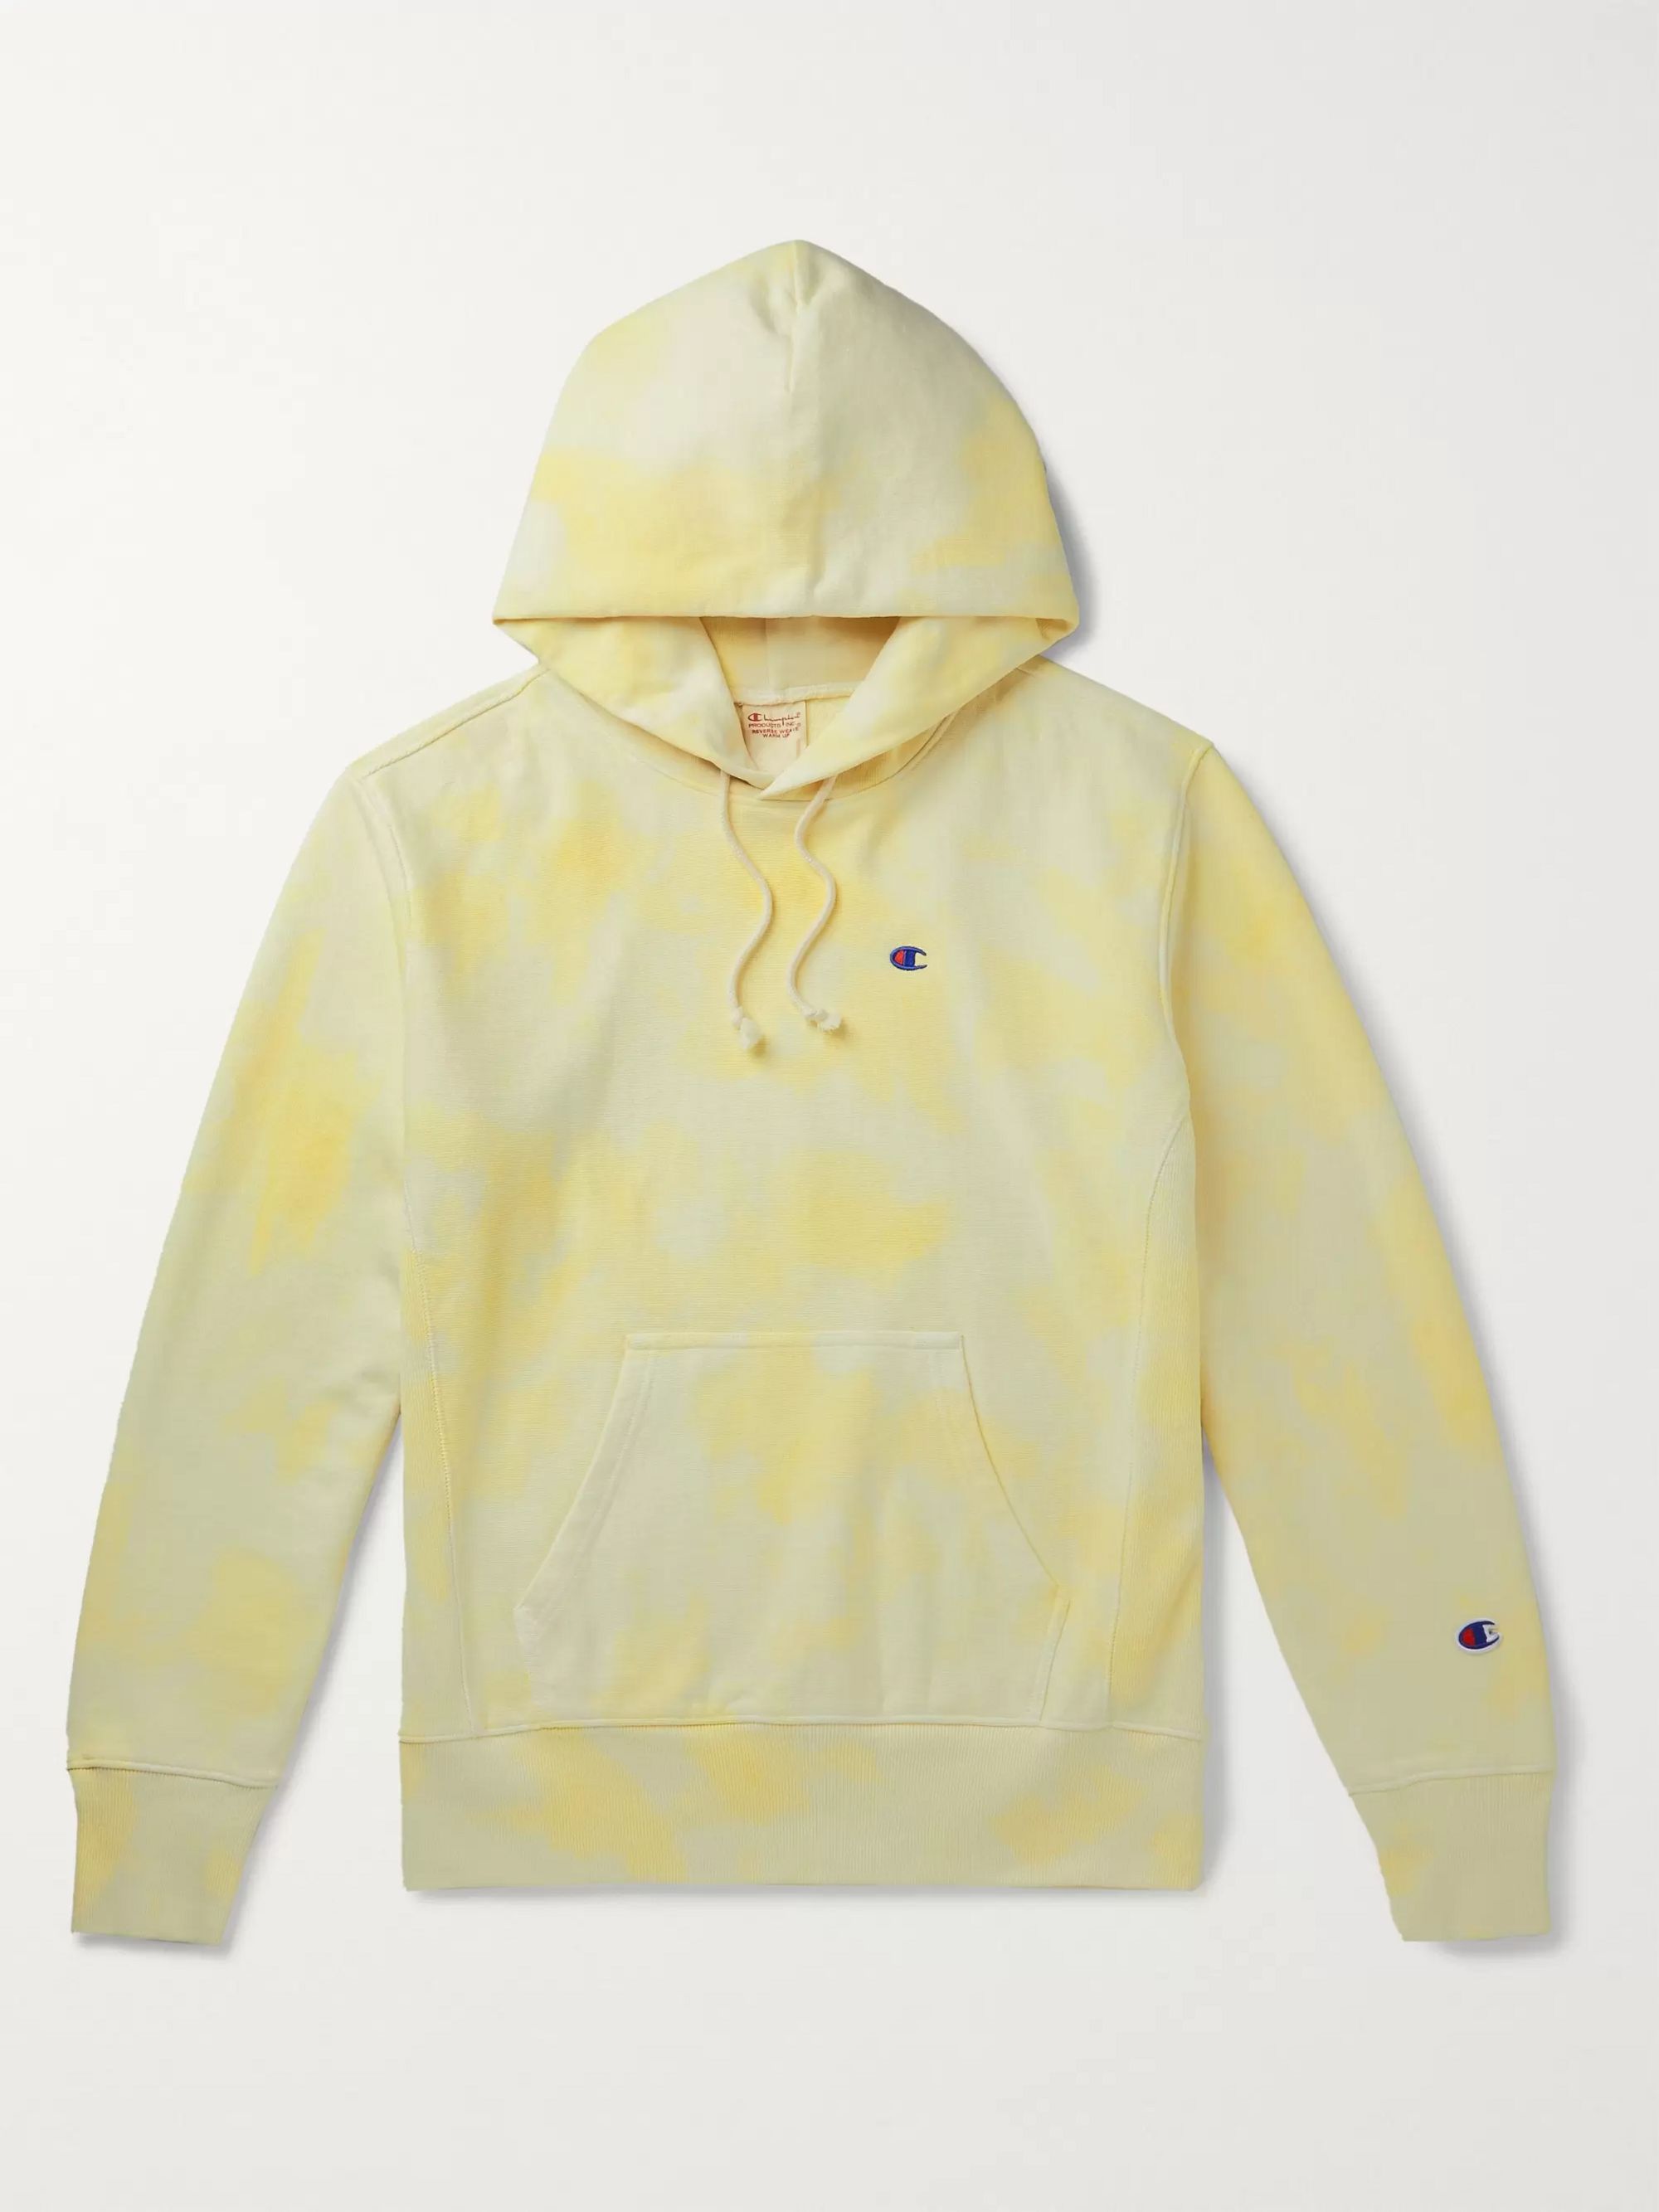 hoodie champion yellow